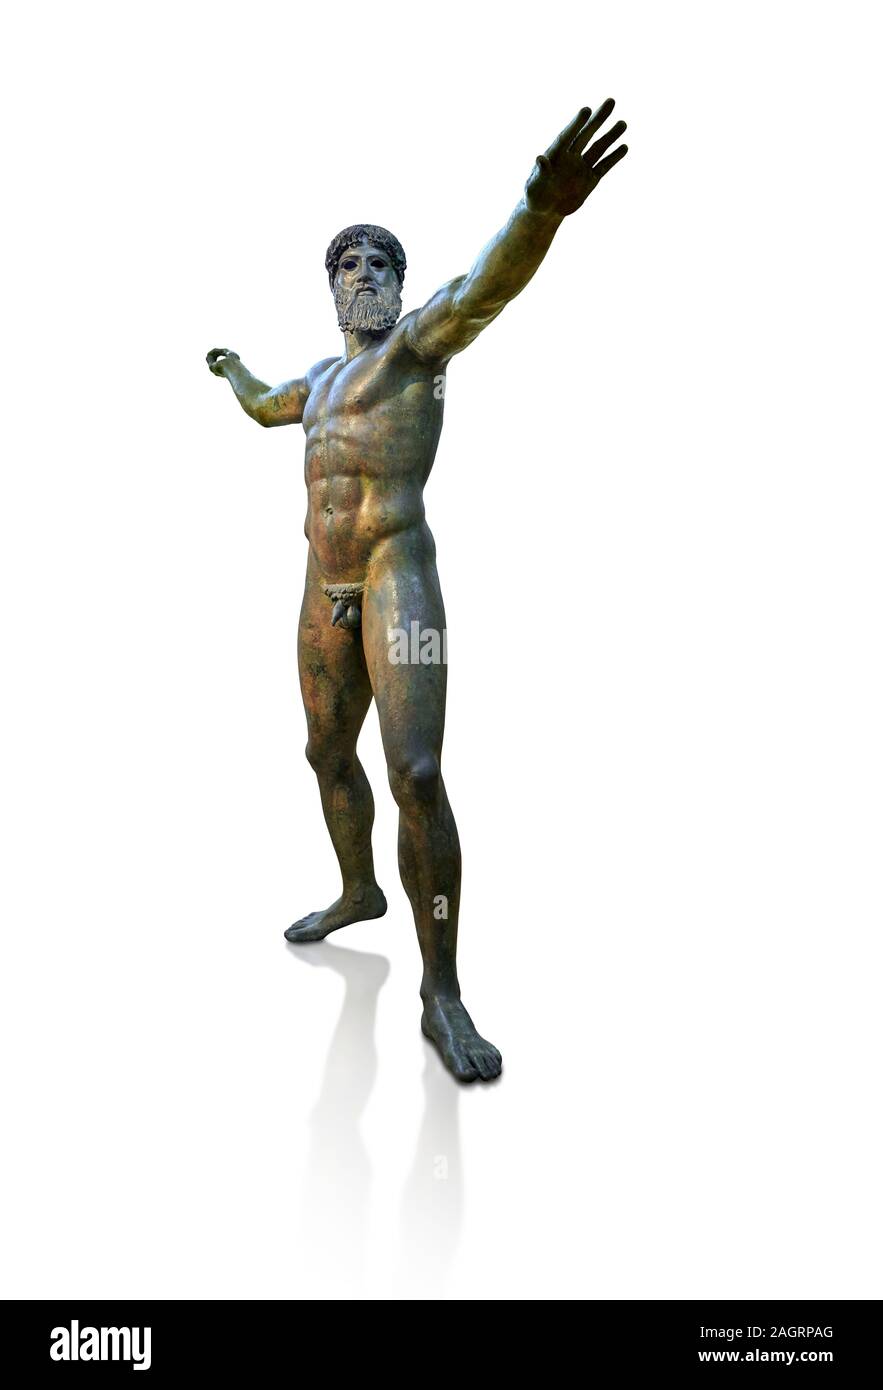 Au début de l'antiquité grecque classique statue en bronze de Zeus ou Poséidon, circa 450 BC. Musée National d'Athènes Arcjaeological, Cat no X15161. Fond blanc Banque D'Images